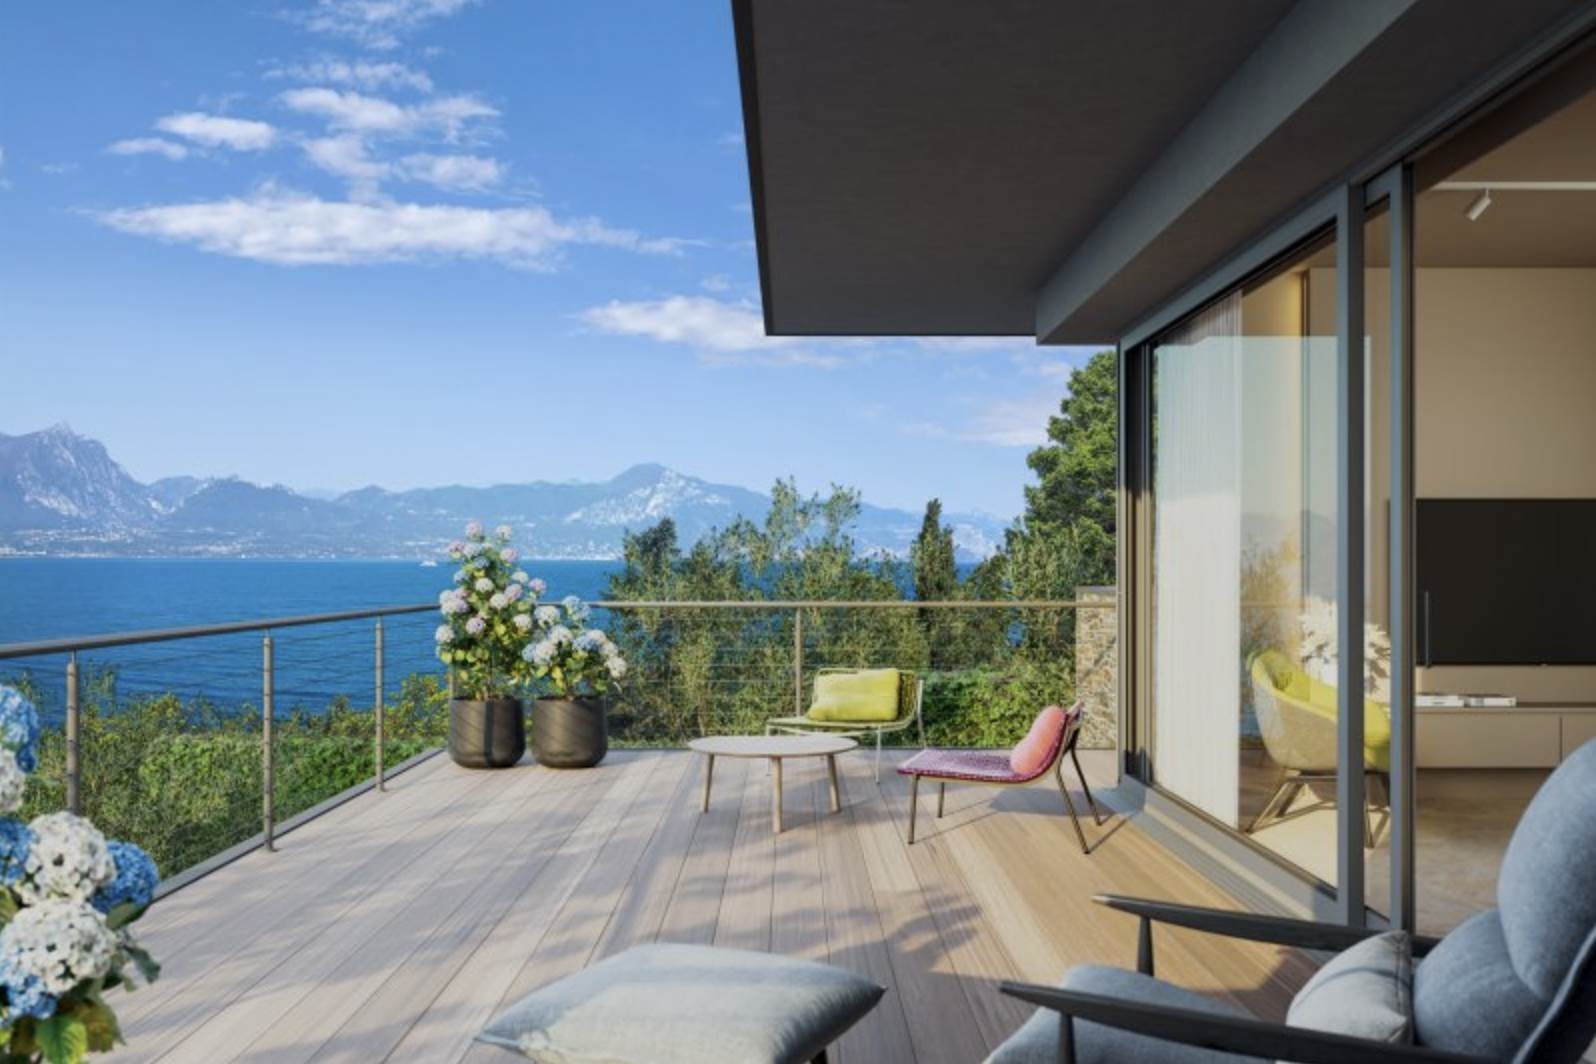 Sulla sposta est del Lago di Garda, in posizione fronte lago tra Torri del Benaco e Garda, viene realizzato un Residence con design moderno e una 